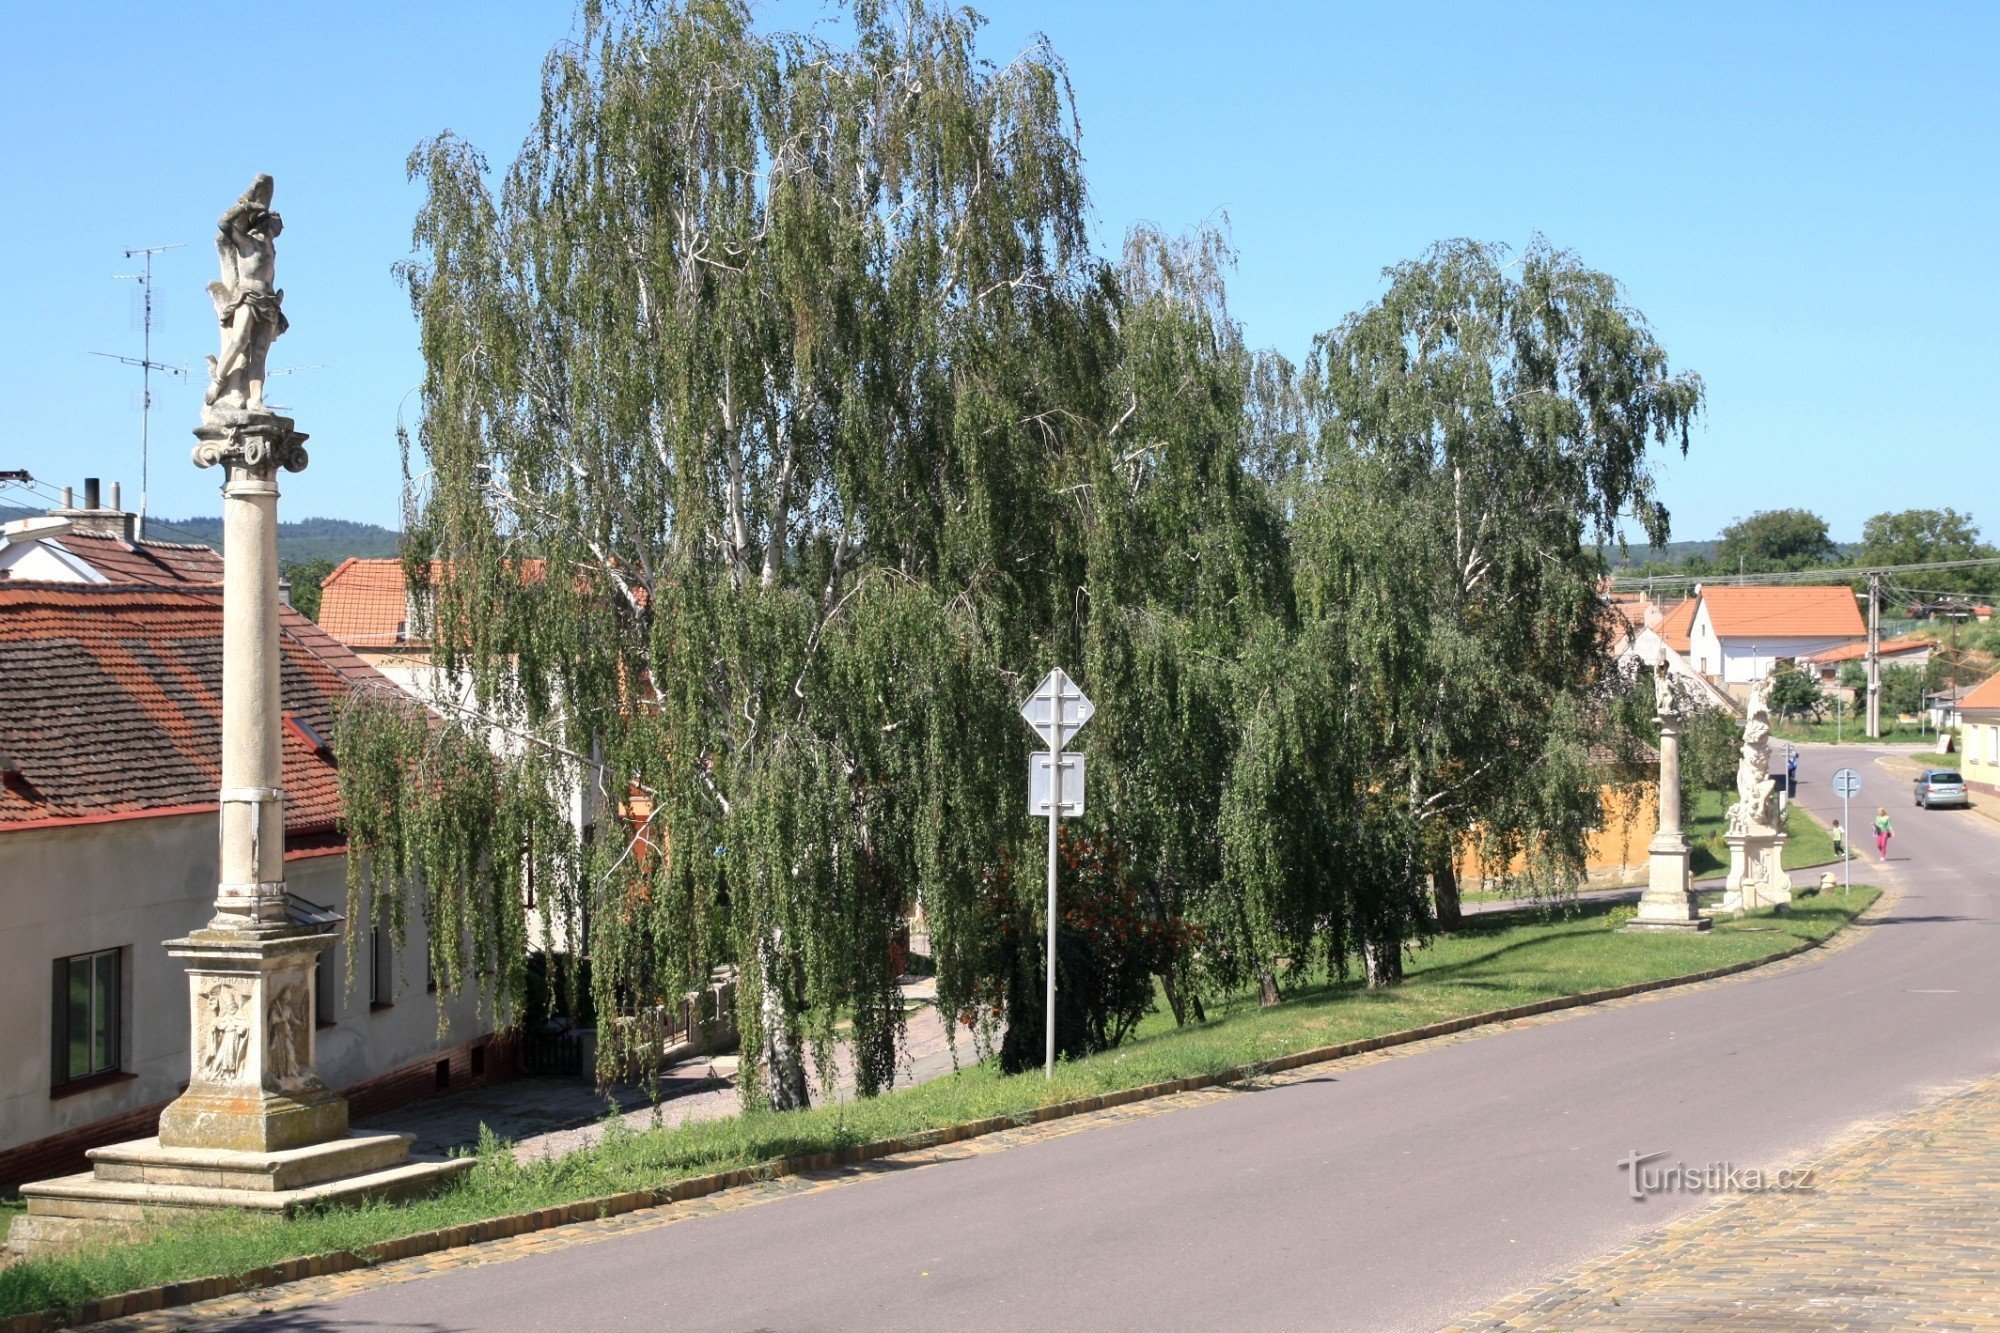 Šatov - mali sakralni spomenici u selu